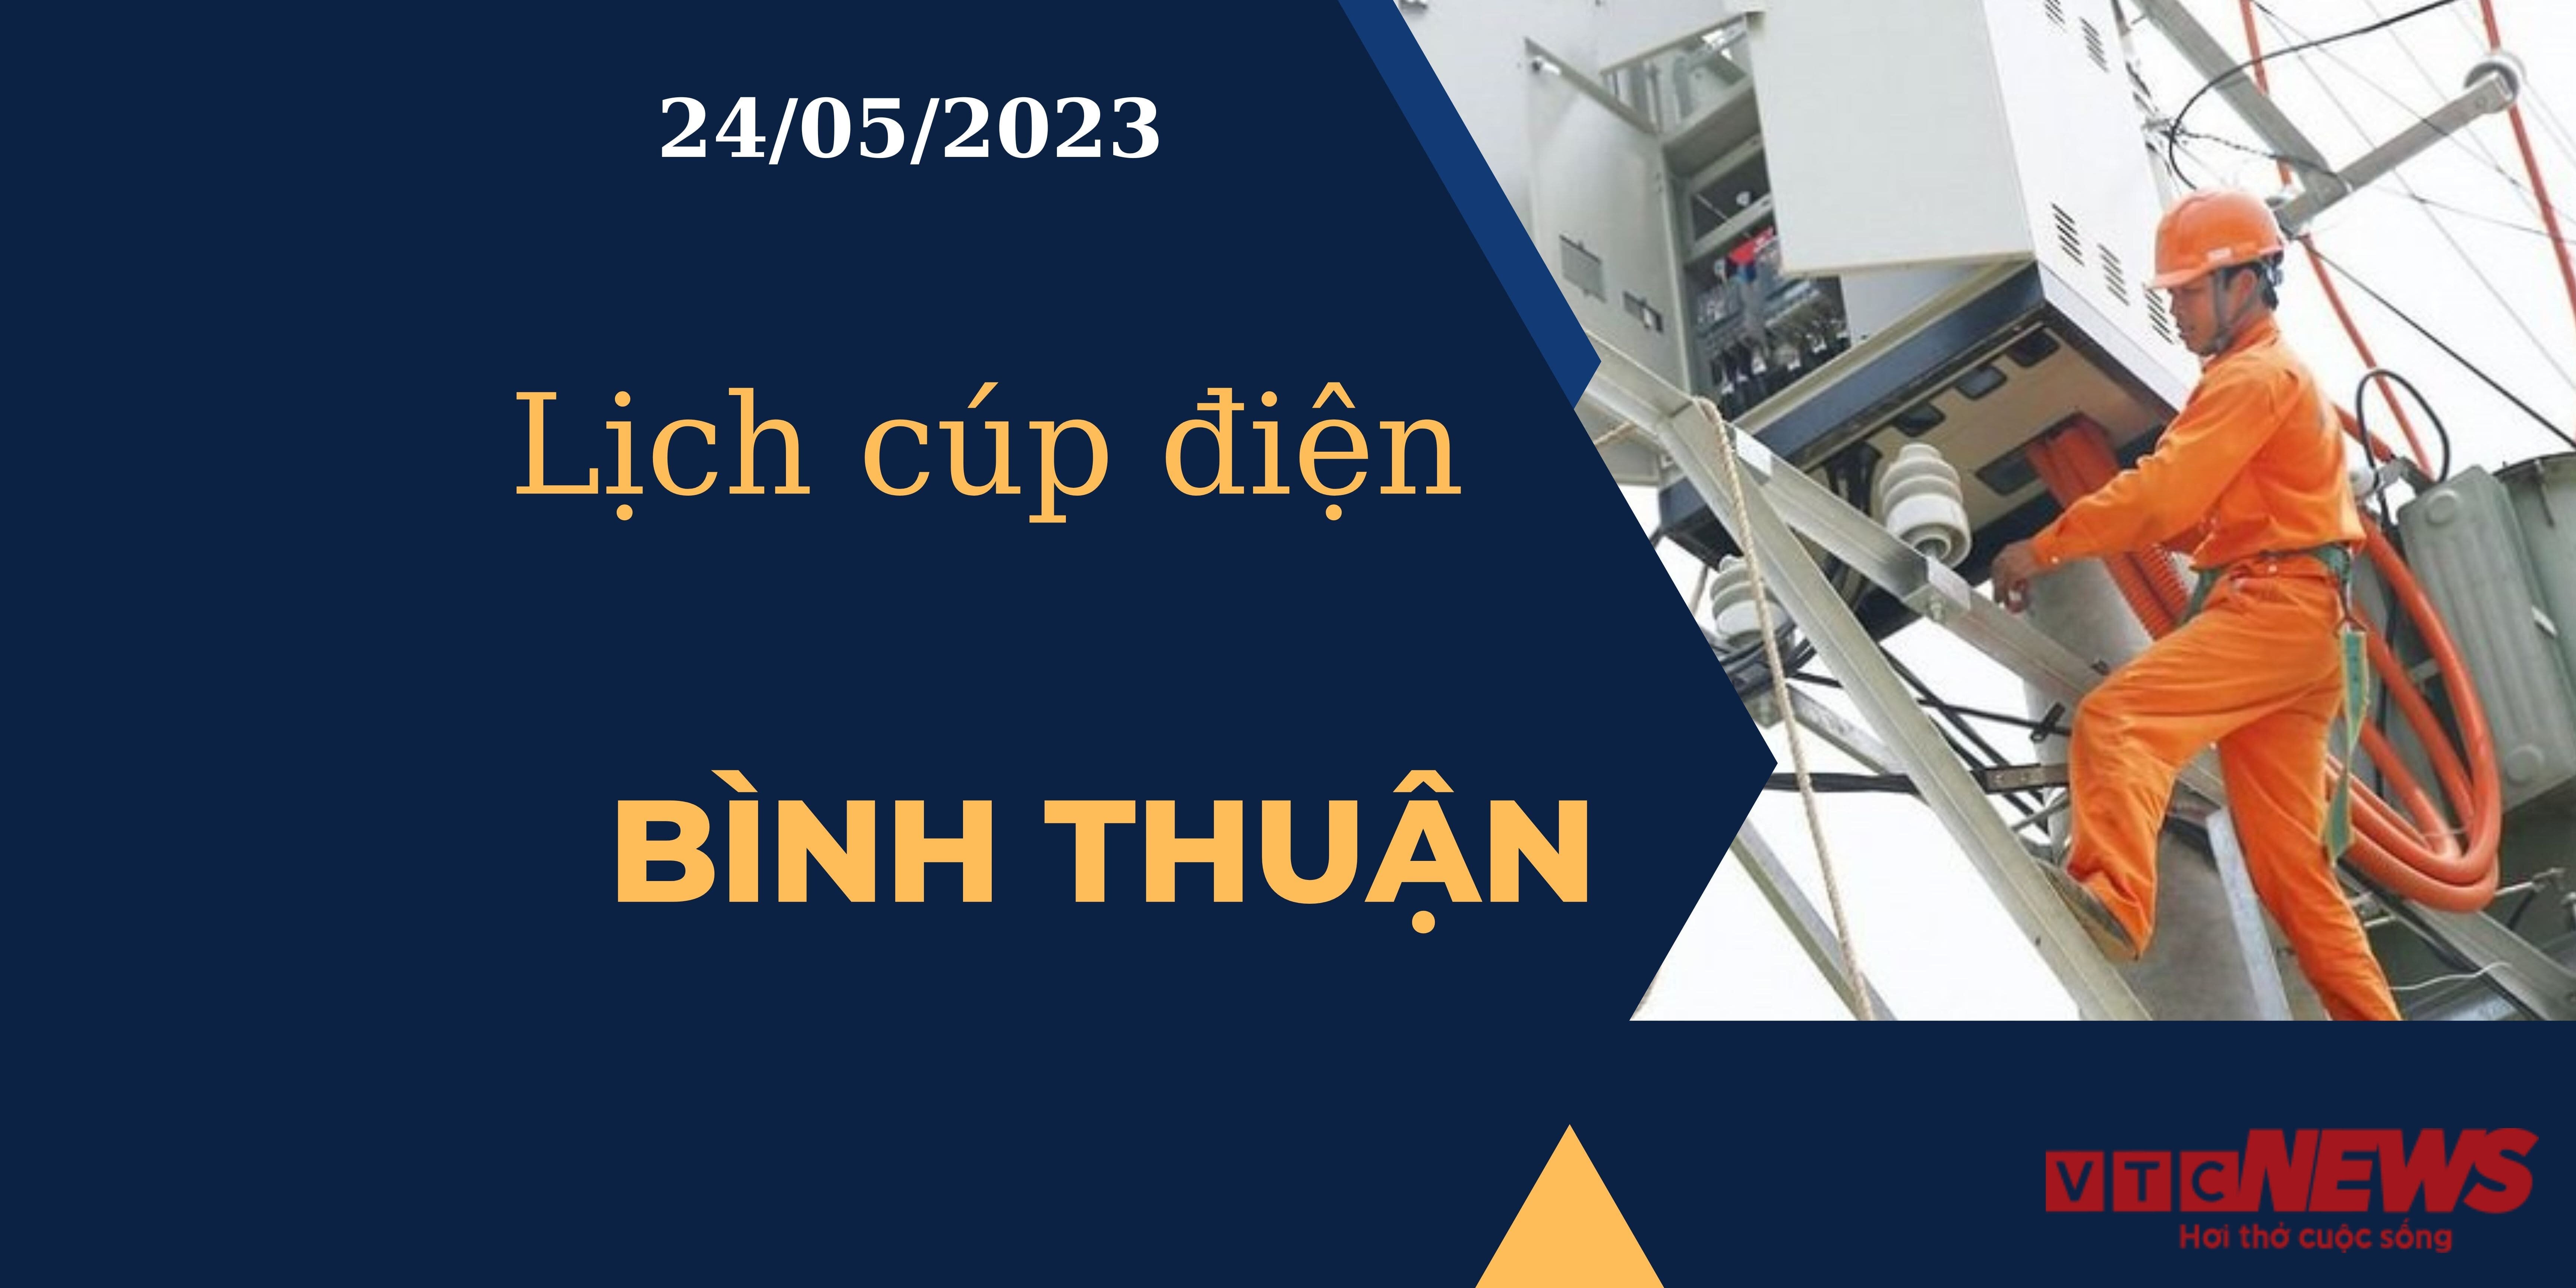 Lịch cúp điện hôm nay ngày 24/05/2023 tại Bình Thuận  - 1